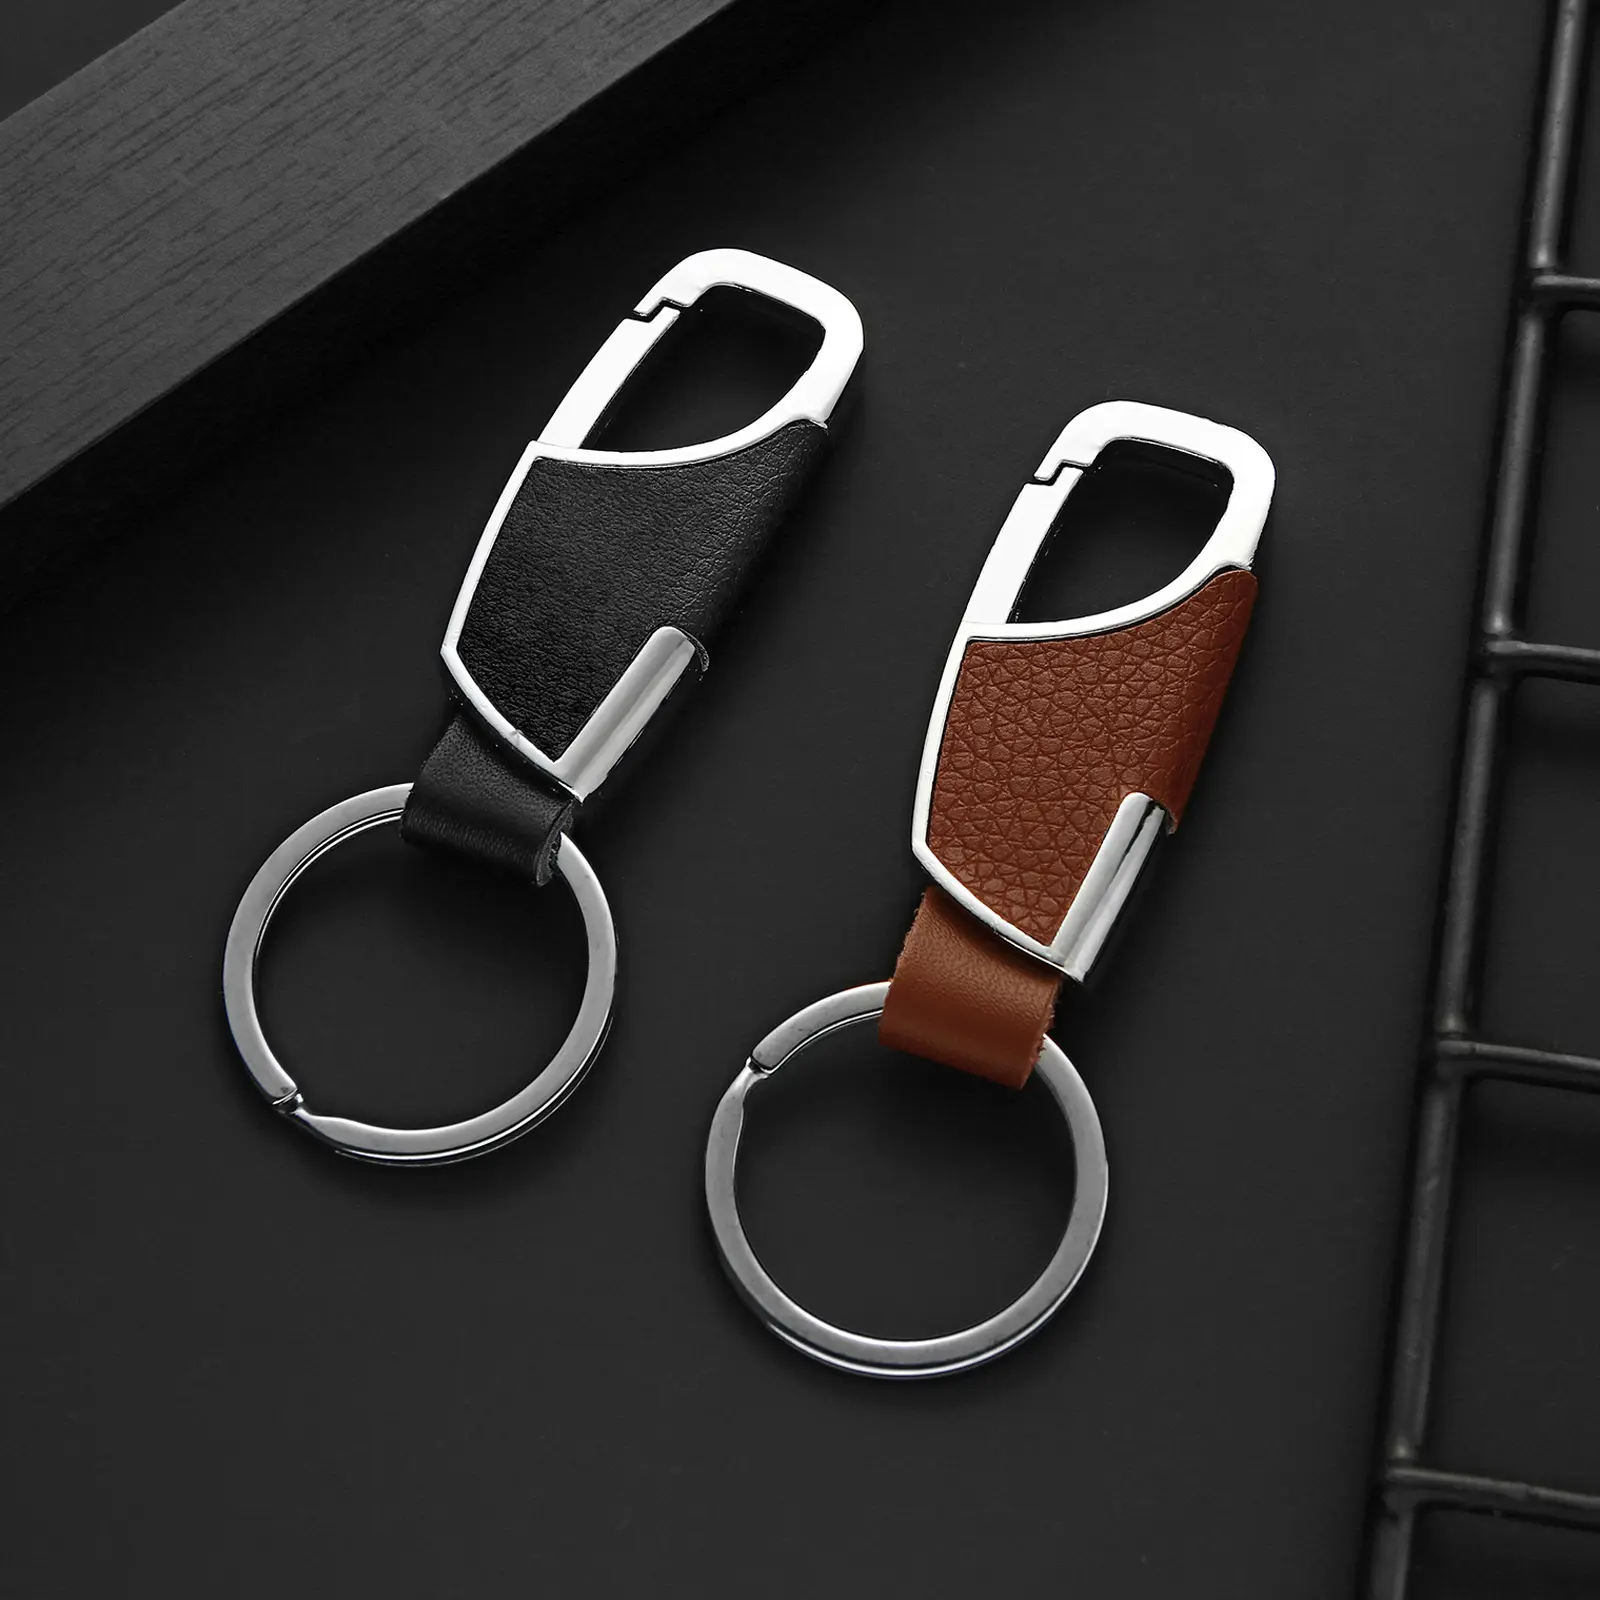 Luxus Männer Metall Leder Auto Schlüssel bund Schwarzer Verschluss Kreative Benutzer definierte Persönlichkeit Schlüssel bund Auto halter Aktivität Werbe geschenke